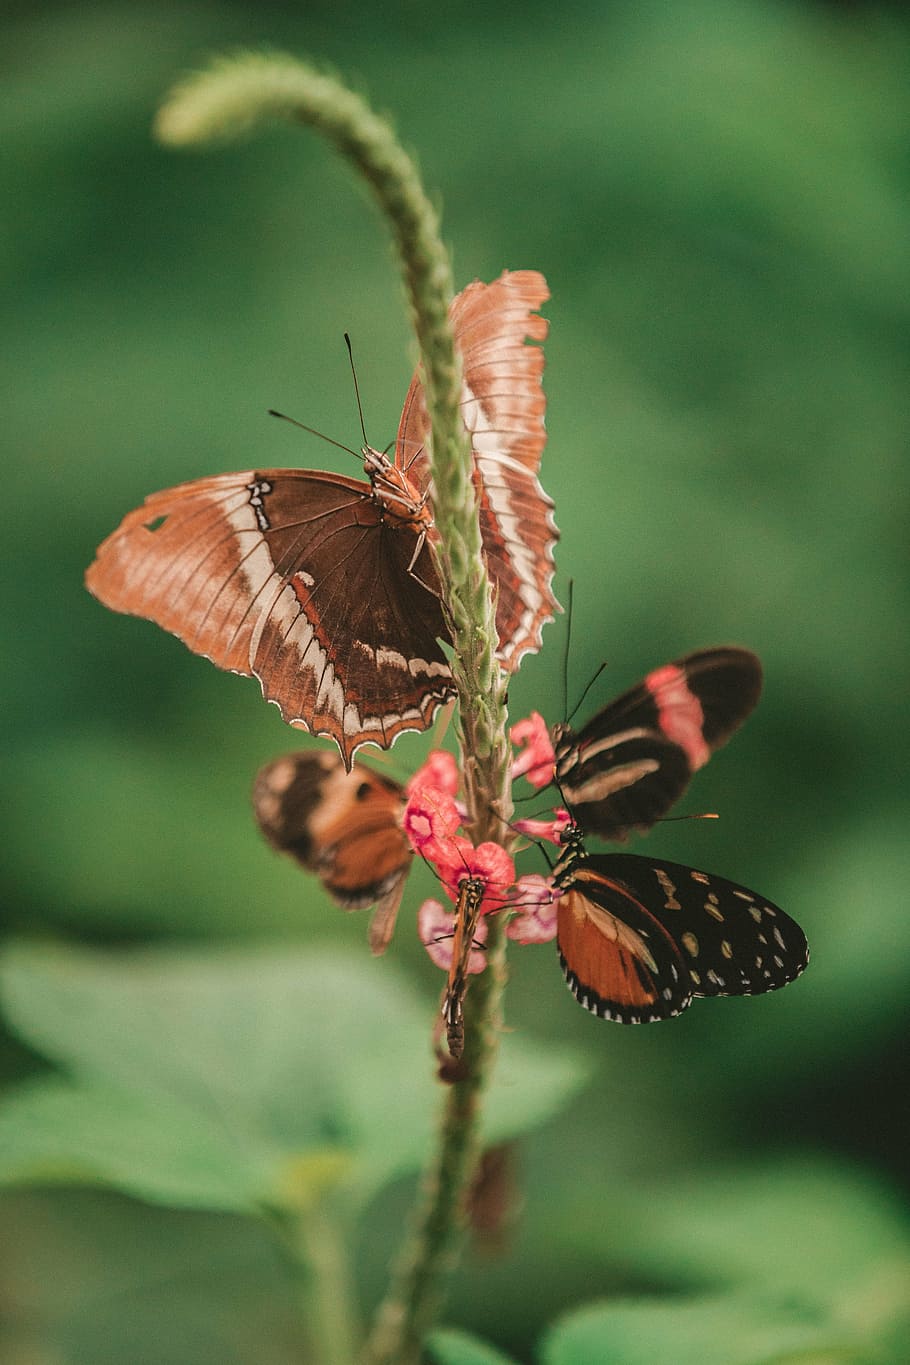 empat, kupu-kupu, merah muda, bunga klaster, selektif, fotografi fokus, ngengat, serangga, makro, close up